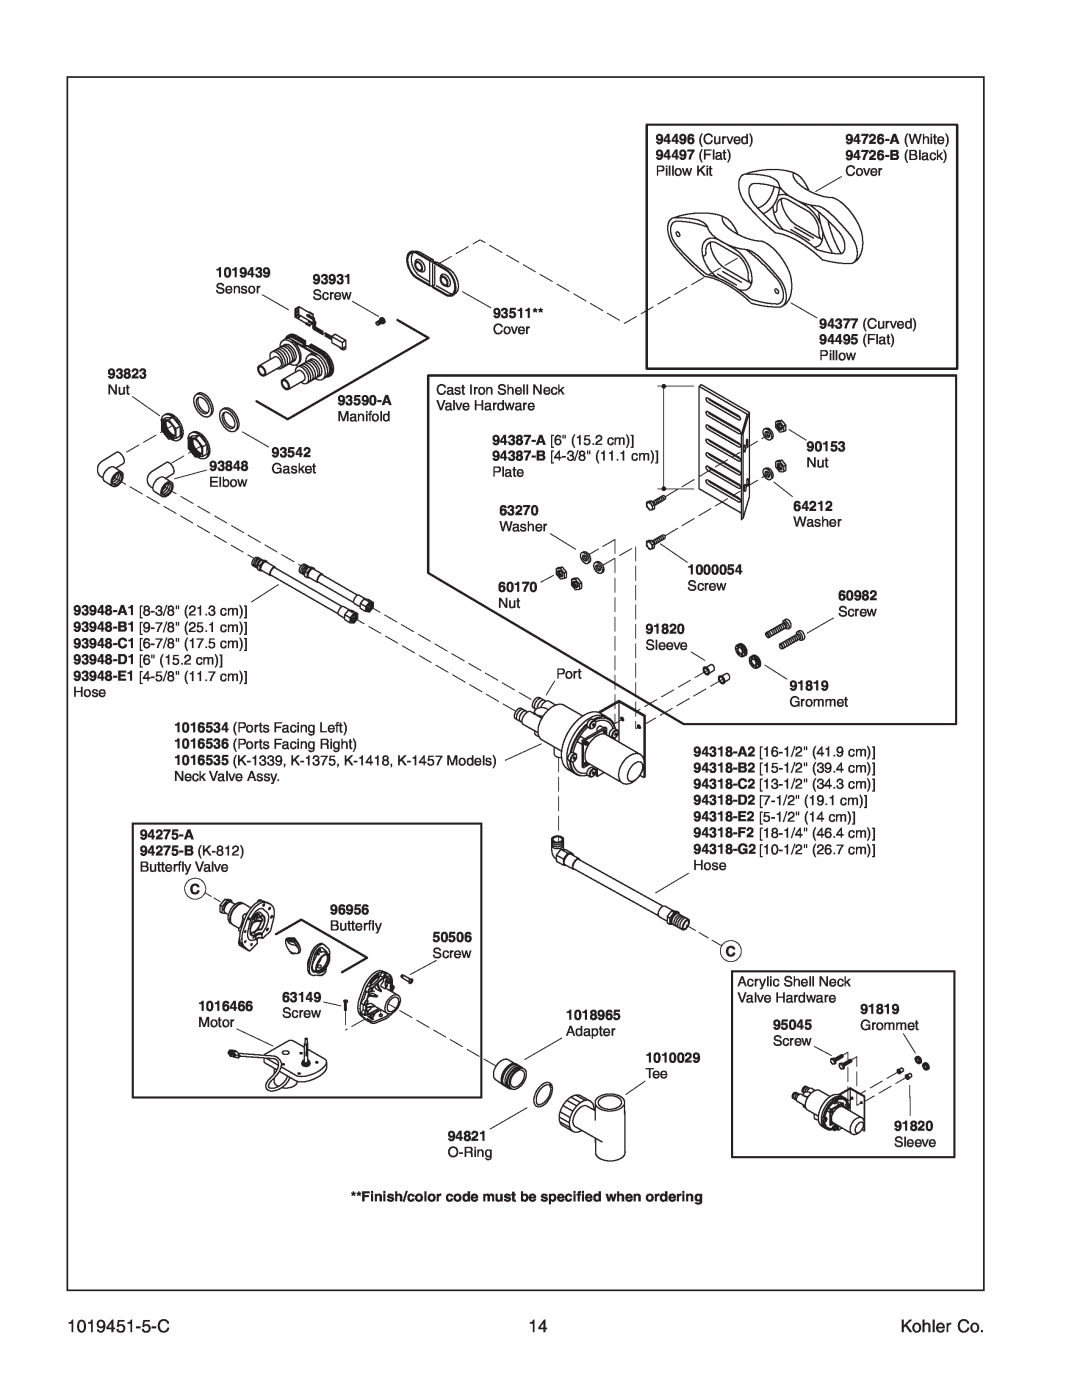 Kohler K-865 manual 1019451-5-C, Kohler Co, Washer, Valve Hardware 